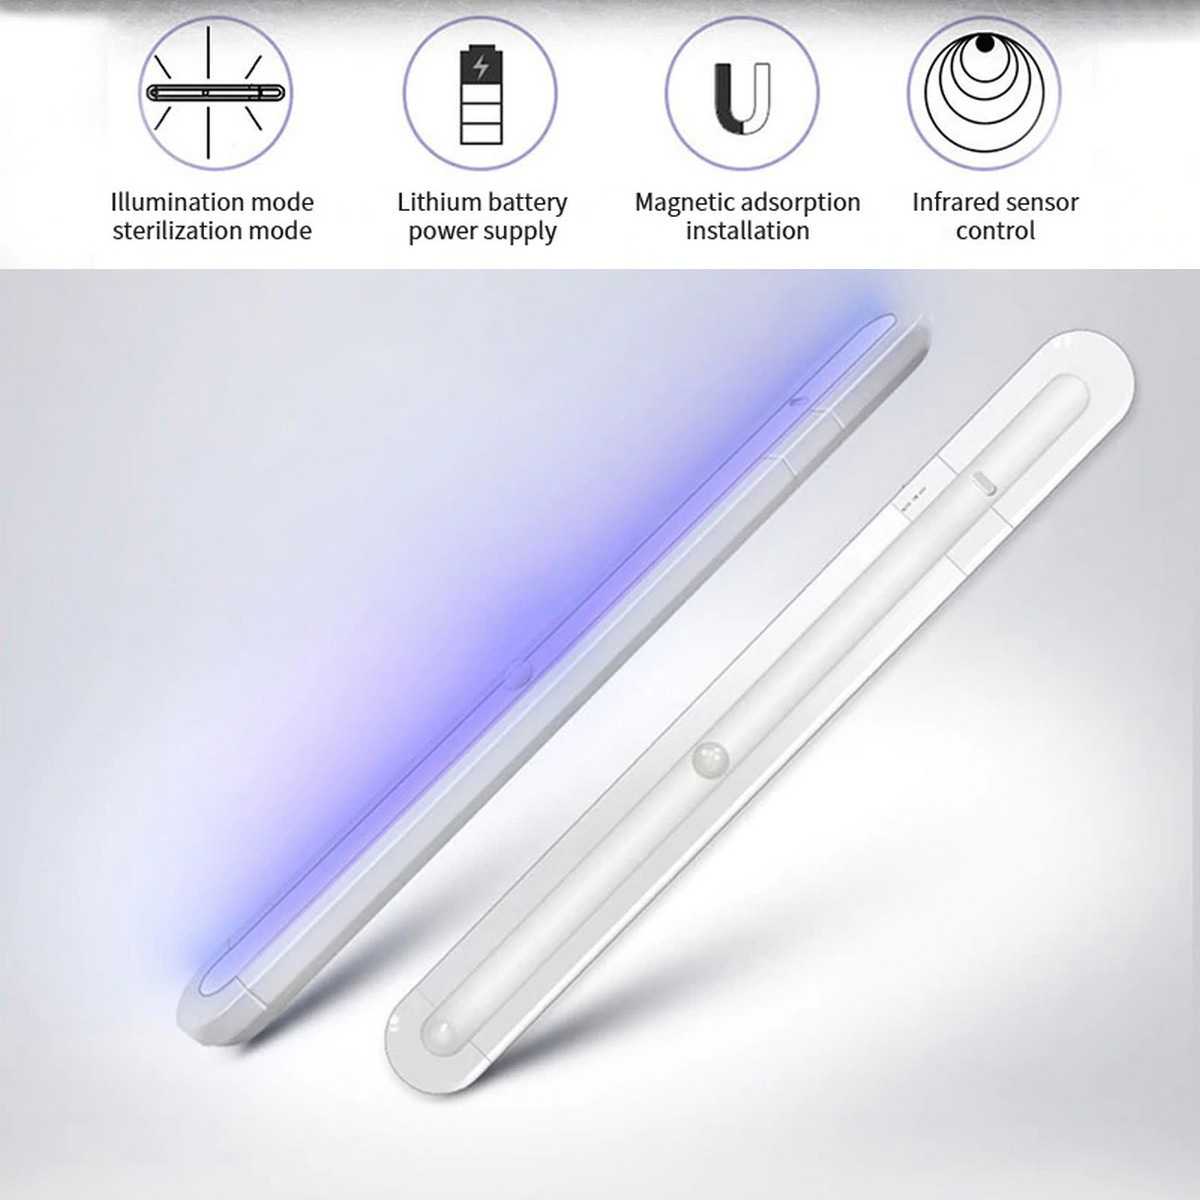 IL-005: Sensor de luz ultravioleta (UV)